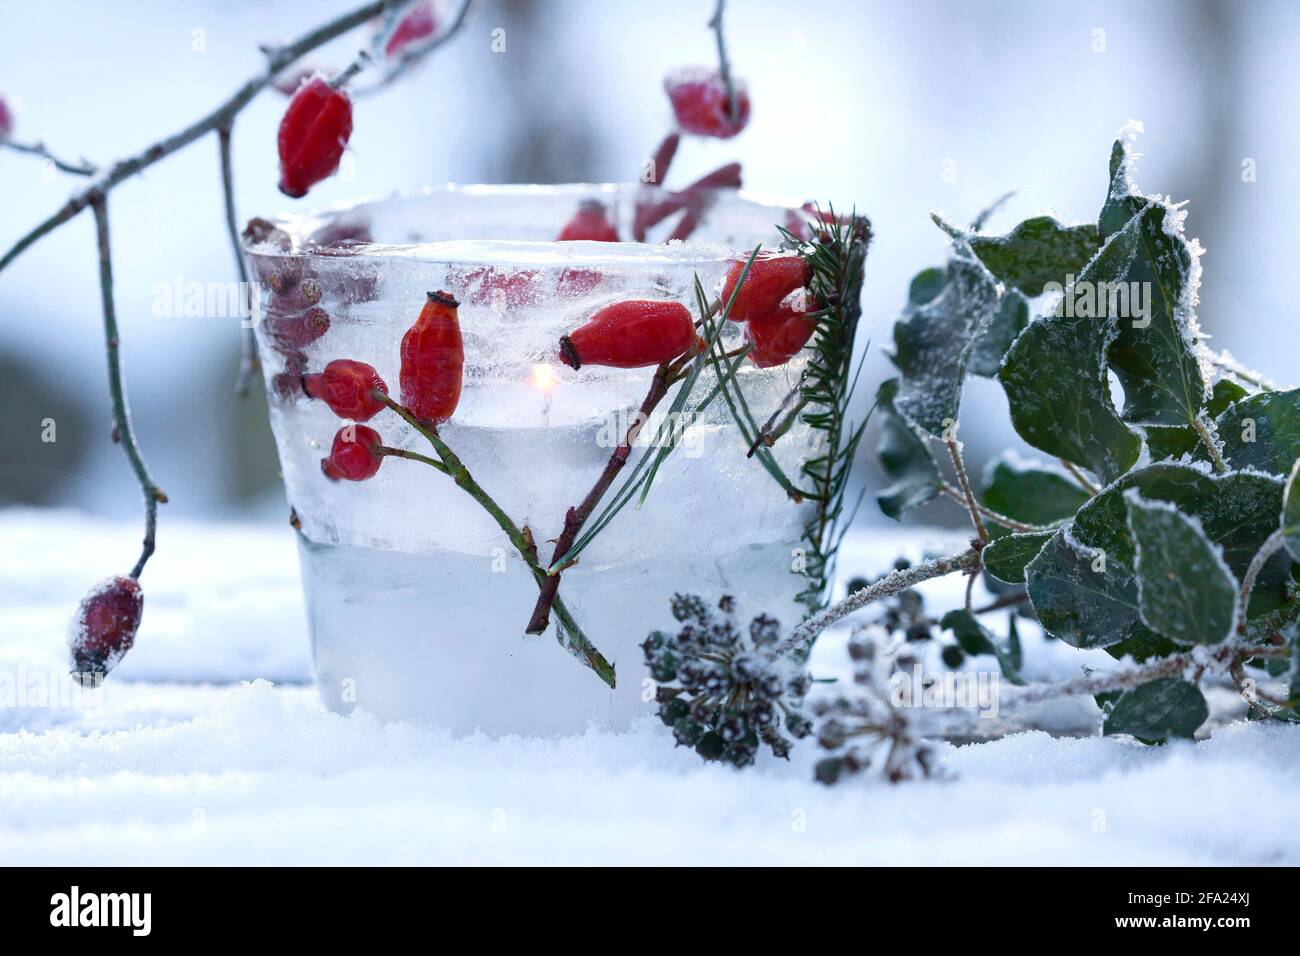 Lanterna di ghiaccio, la candela brucia all'interno di una bacinella di ghiaccio, decorata con materiali naturali congelati racchiusi nel ghiaccio, in Germania Foto Stock